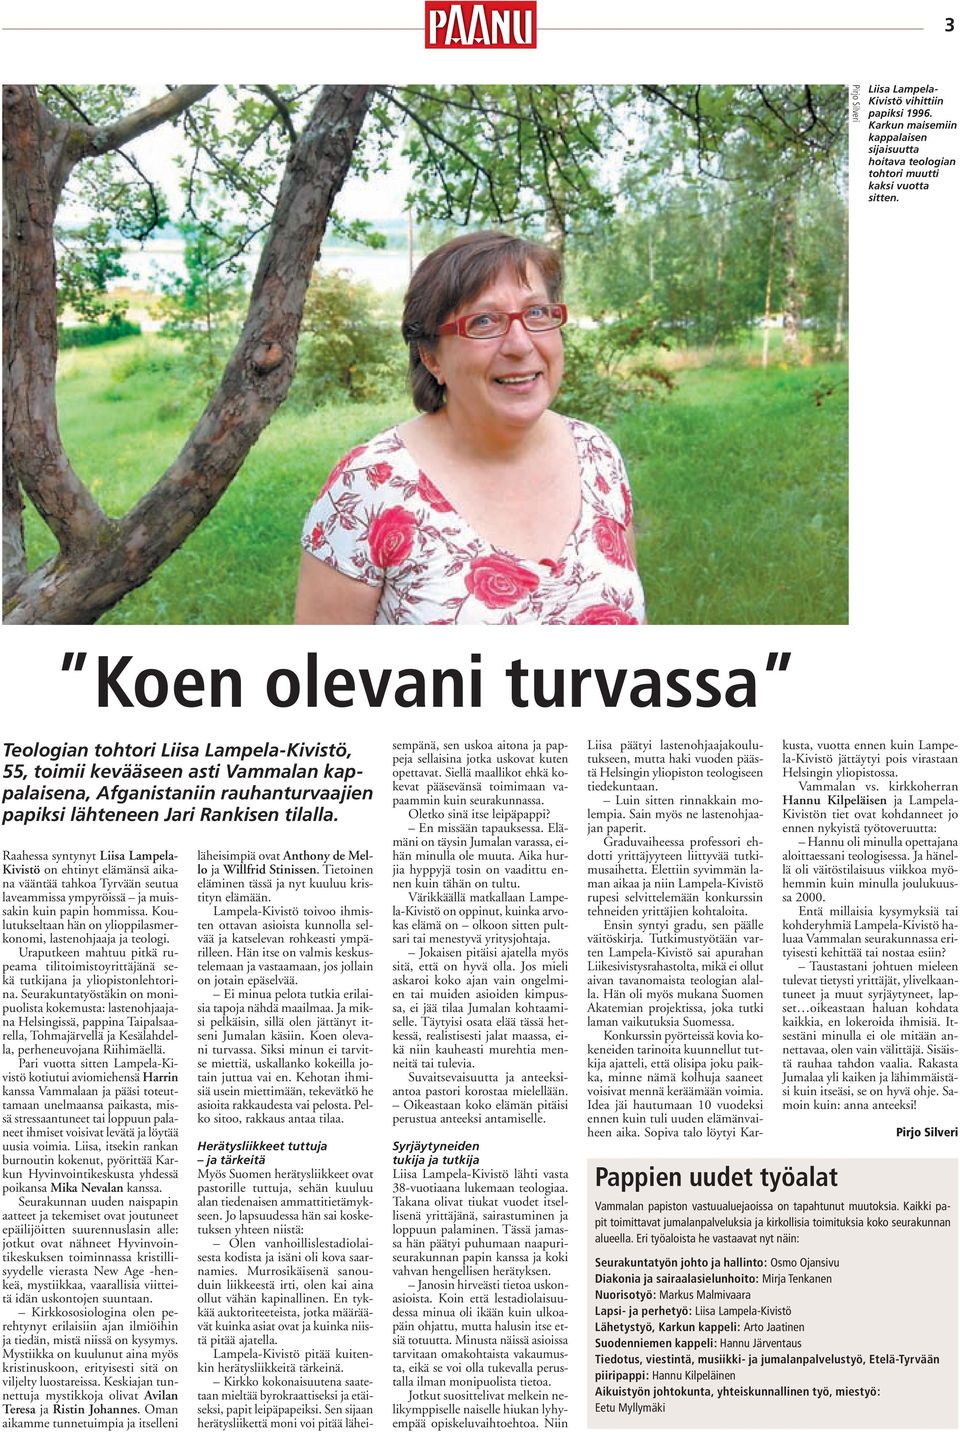 Raahessa syntynyt Liisa Lampela- Kivistö on ehtinyt elämänsä aikana vääntää tahkoa Tyrvään seutua laveammissa ympyröissä ja muissakin kuin papin hommissa.